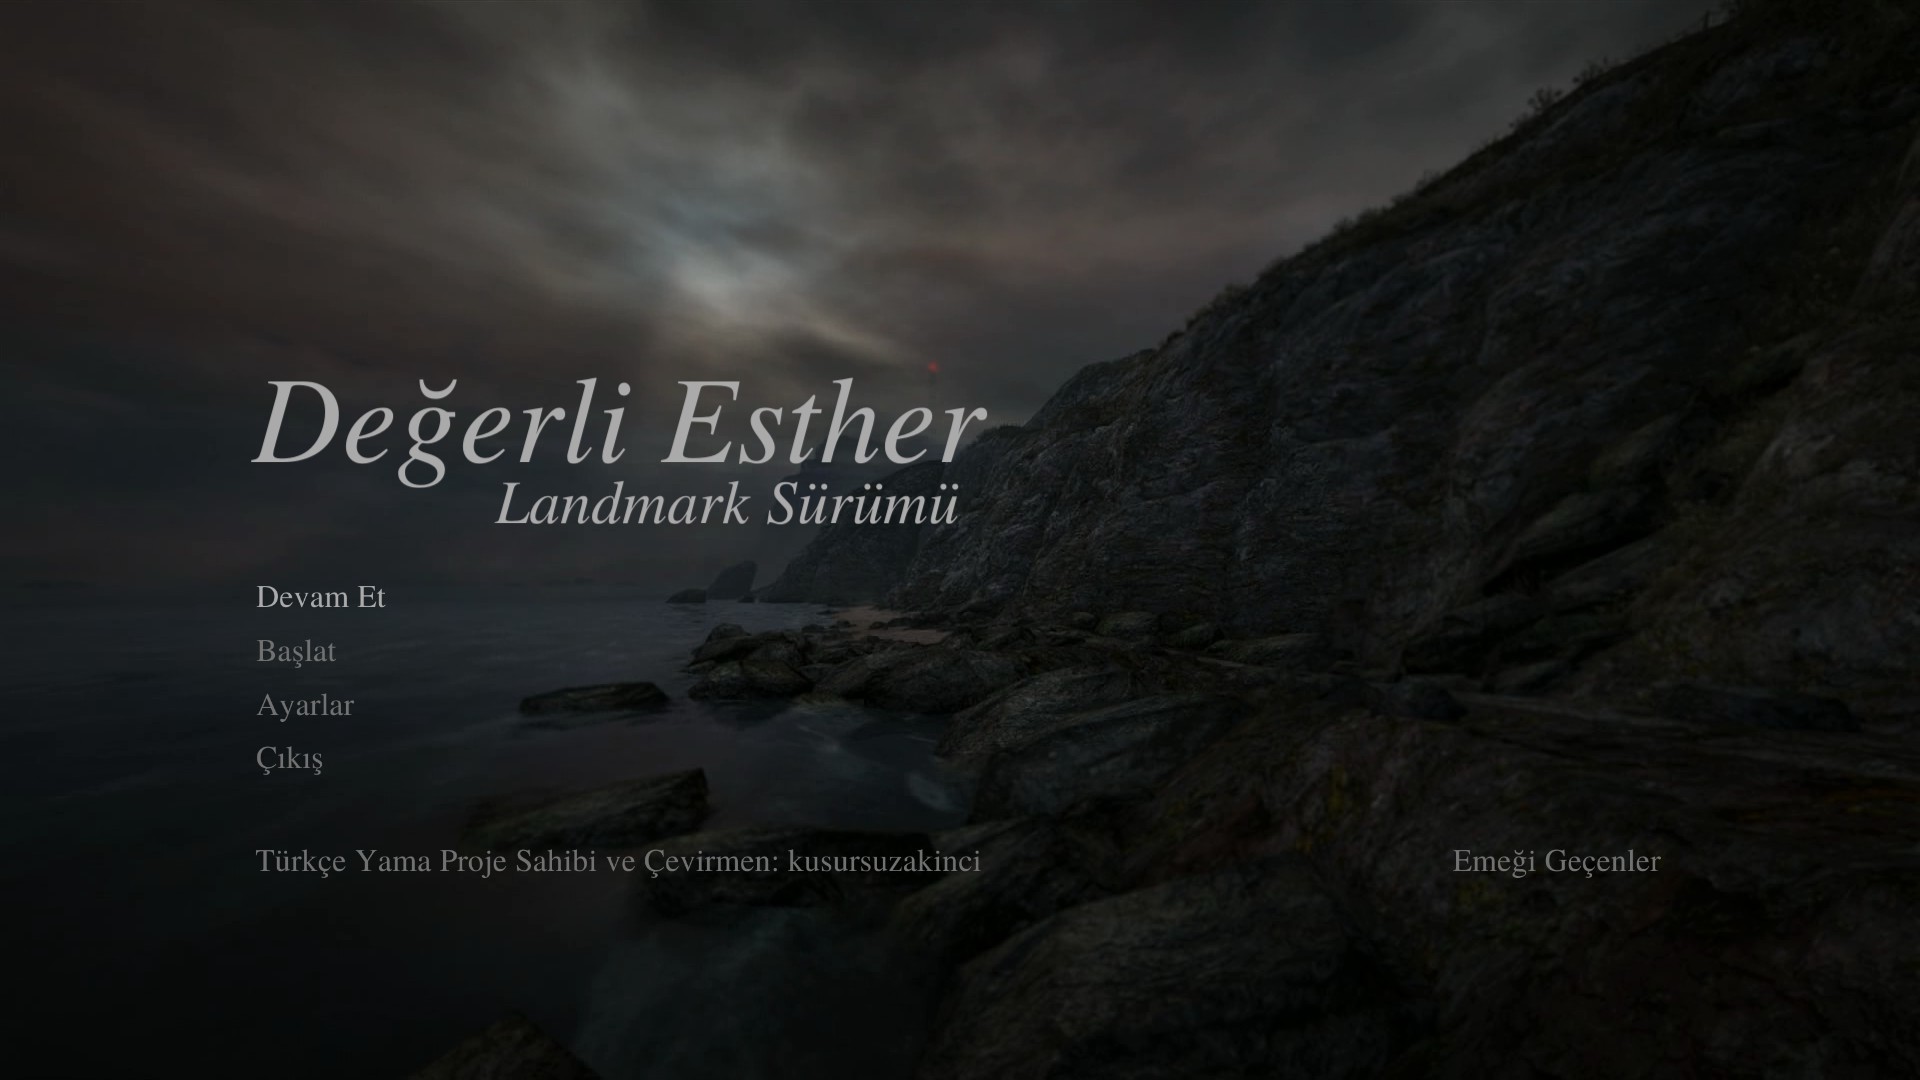 Dear Esther Landmark Edition - Türkçe Yama [BİTTİ]